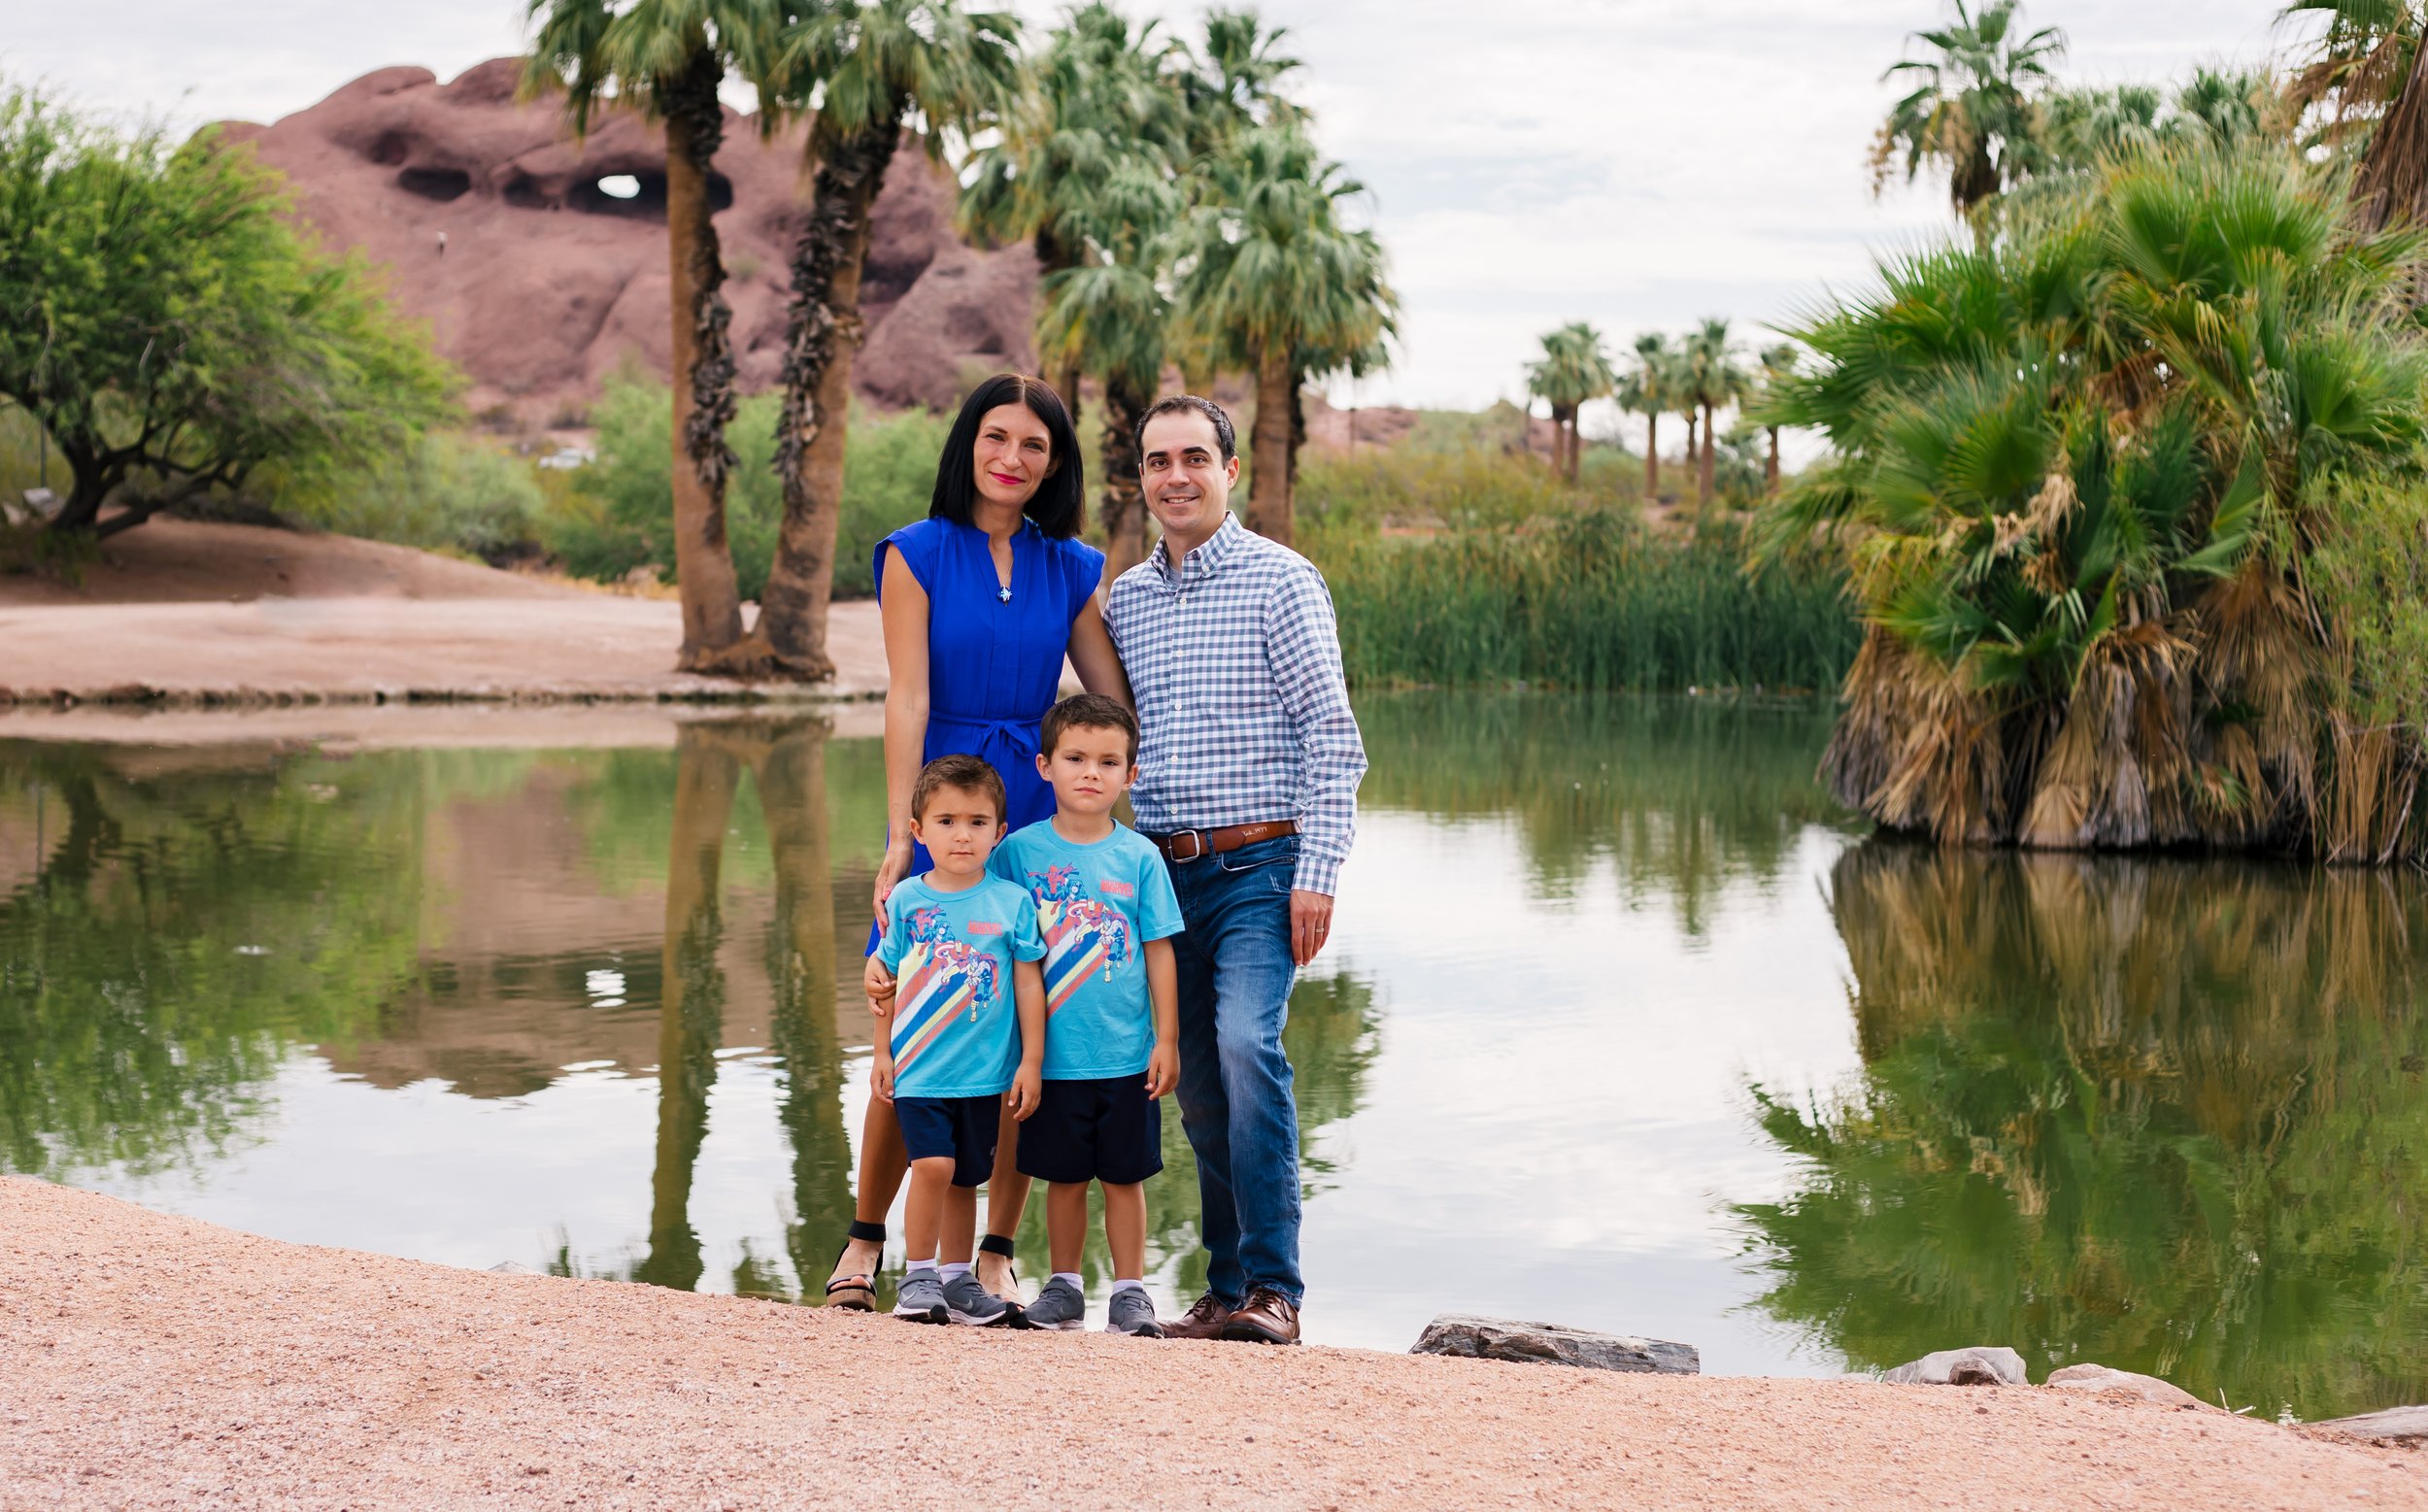 Family session at Papago Park - Phoenix Arizona